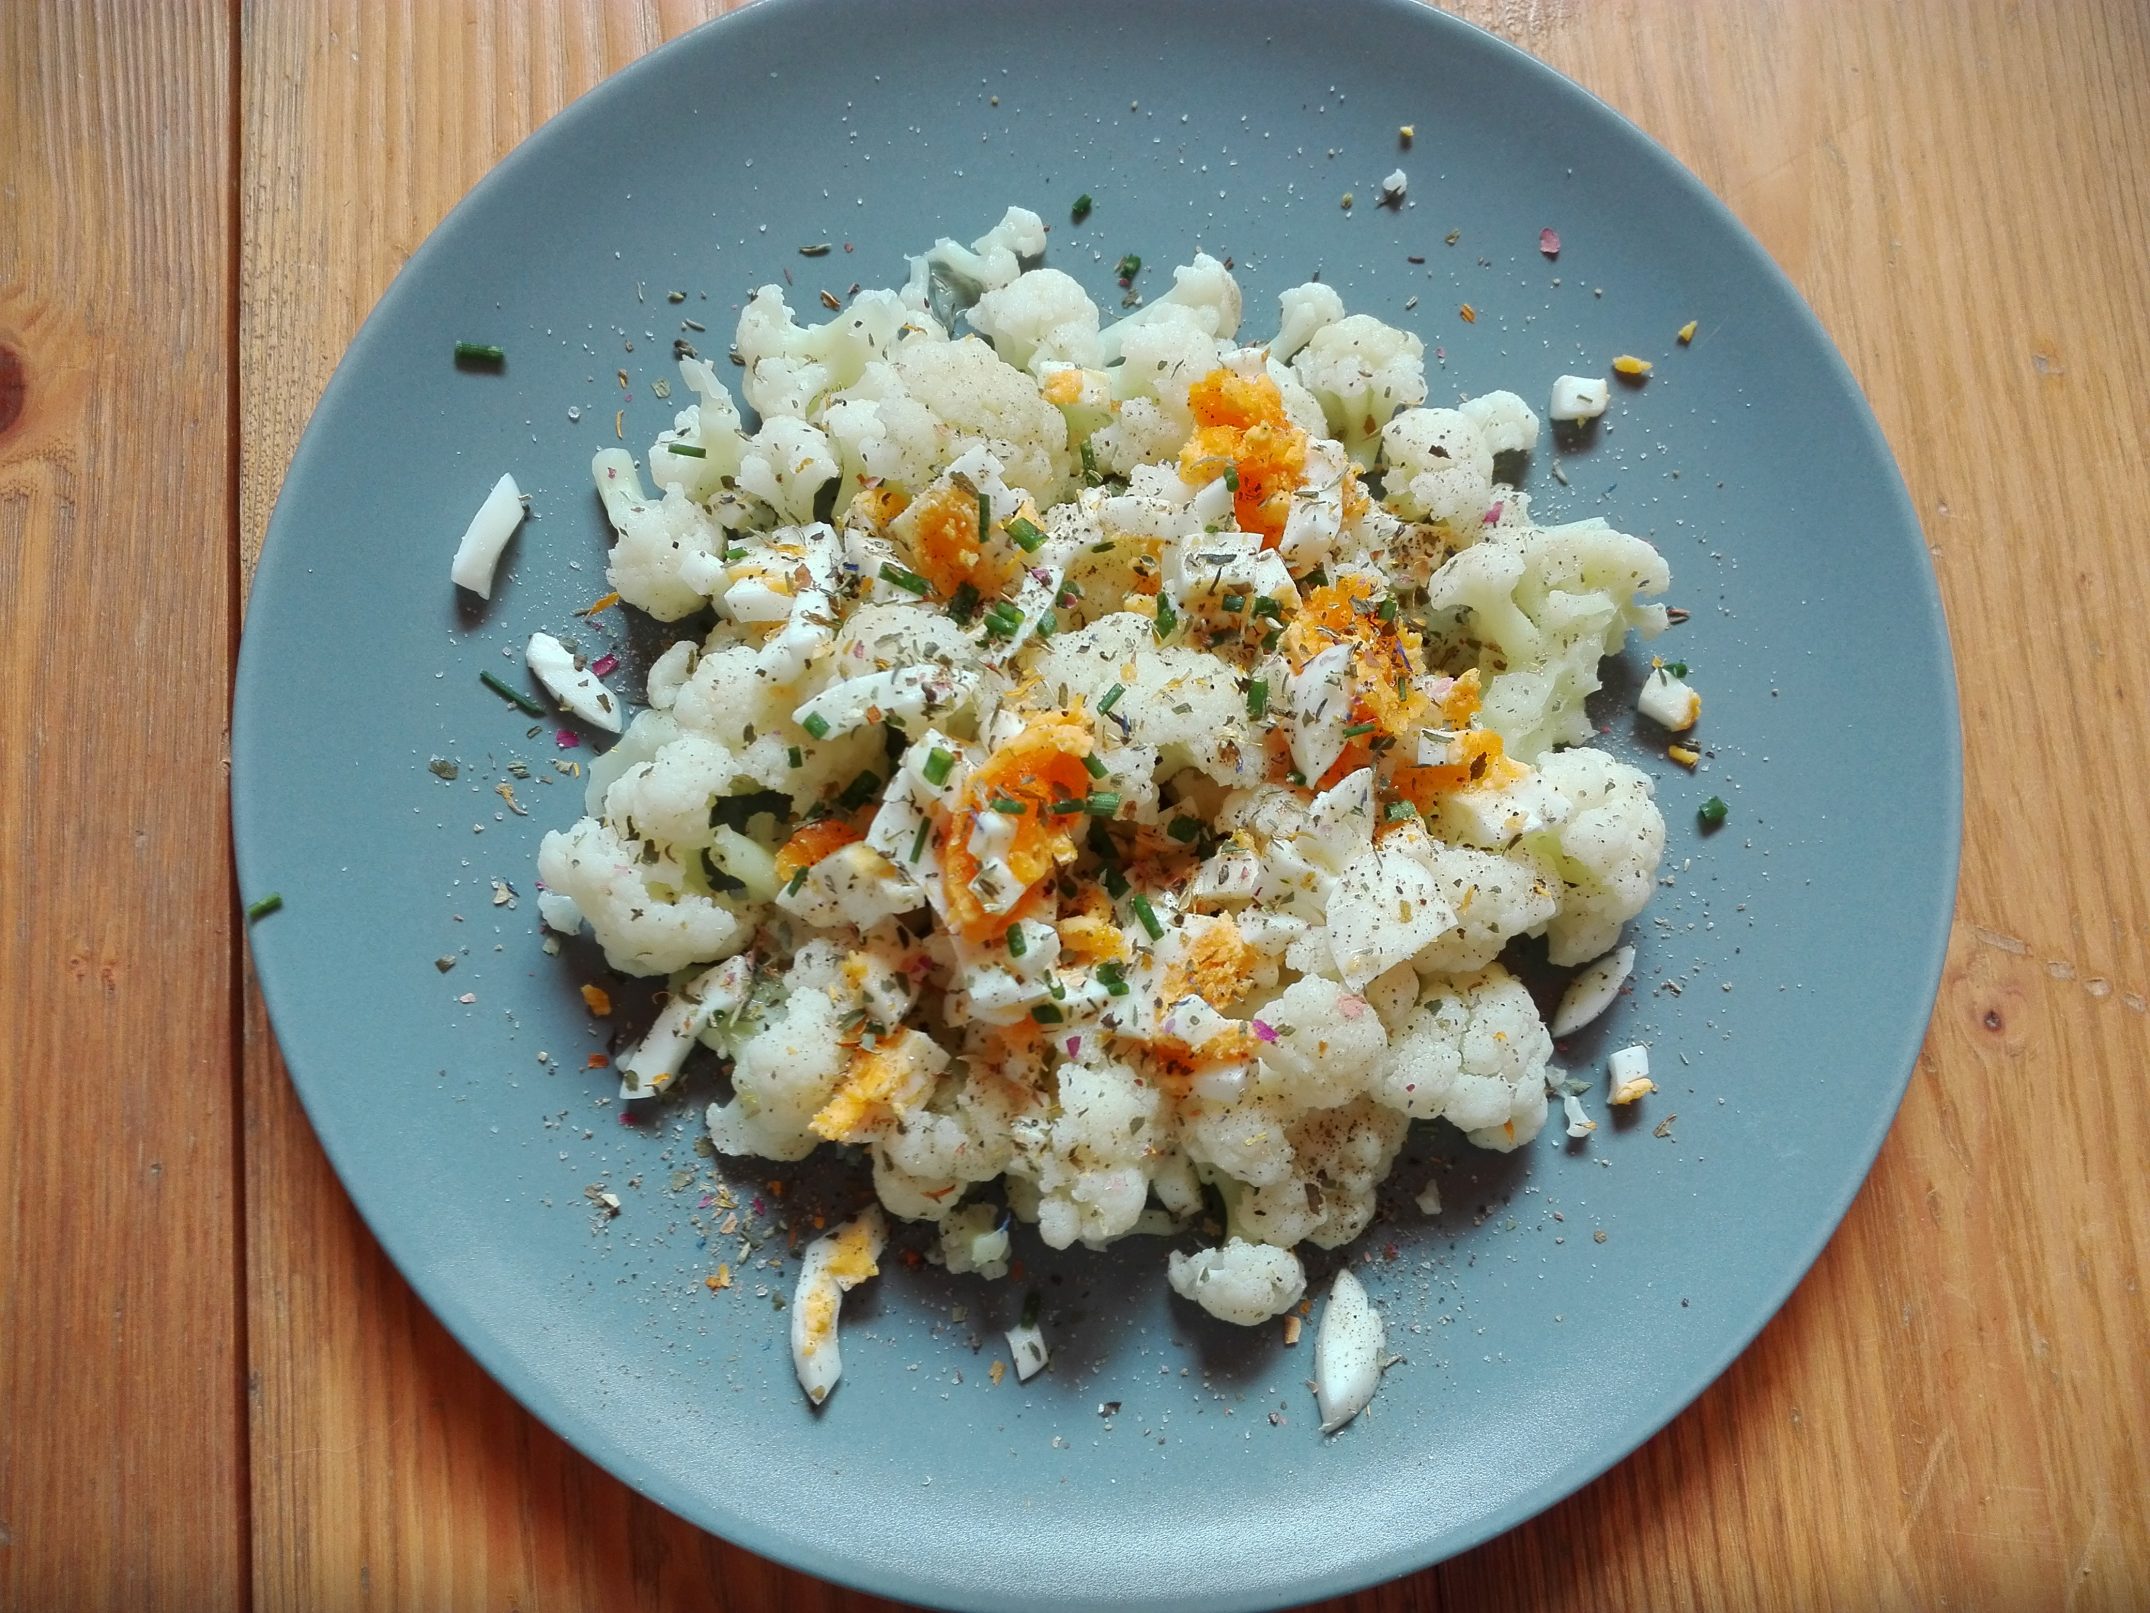 Karfiol-Eier-Salat einfach, schnell und sehr gut!